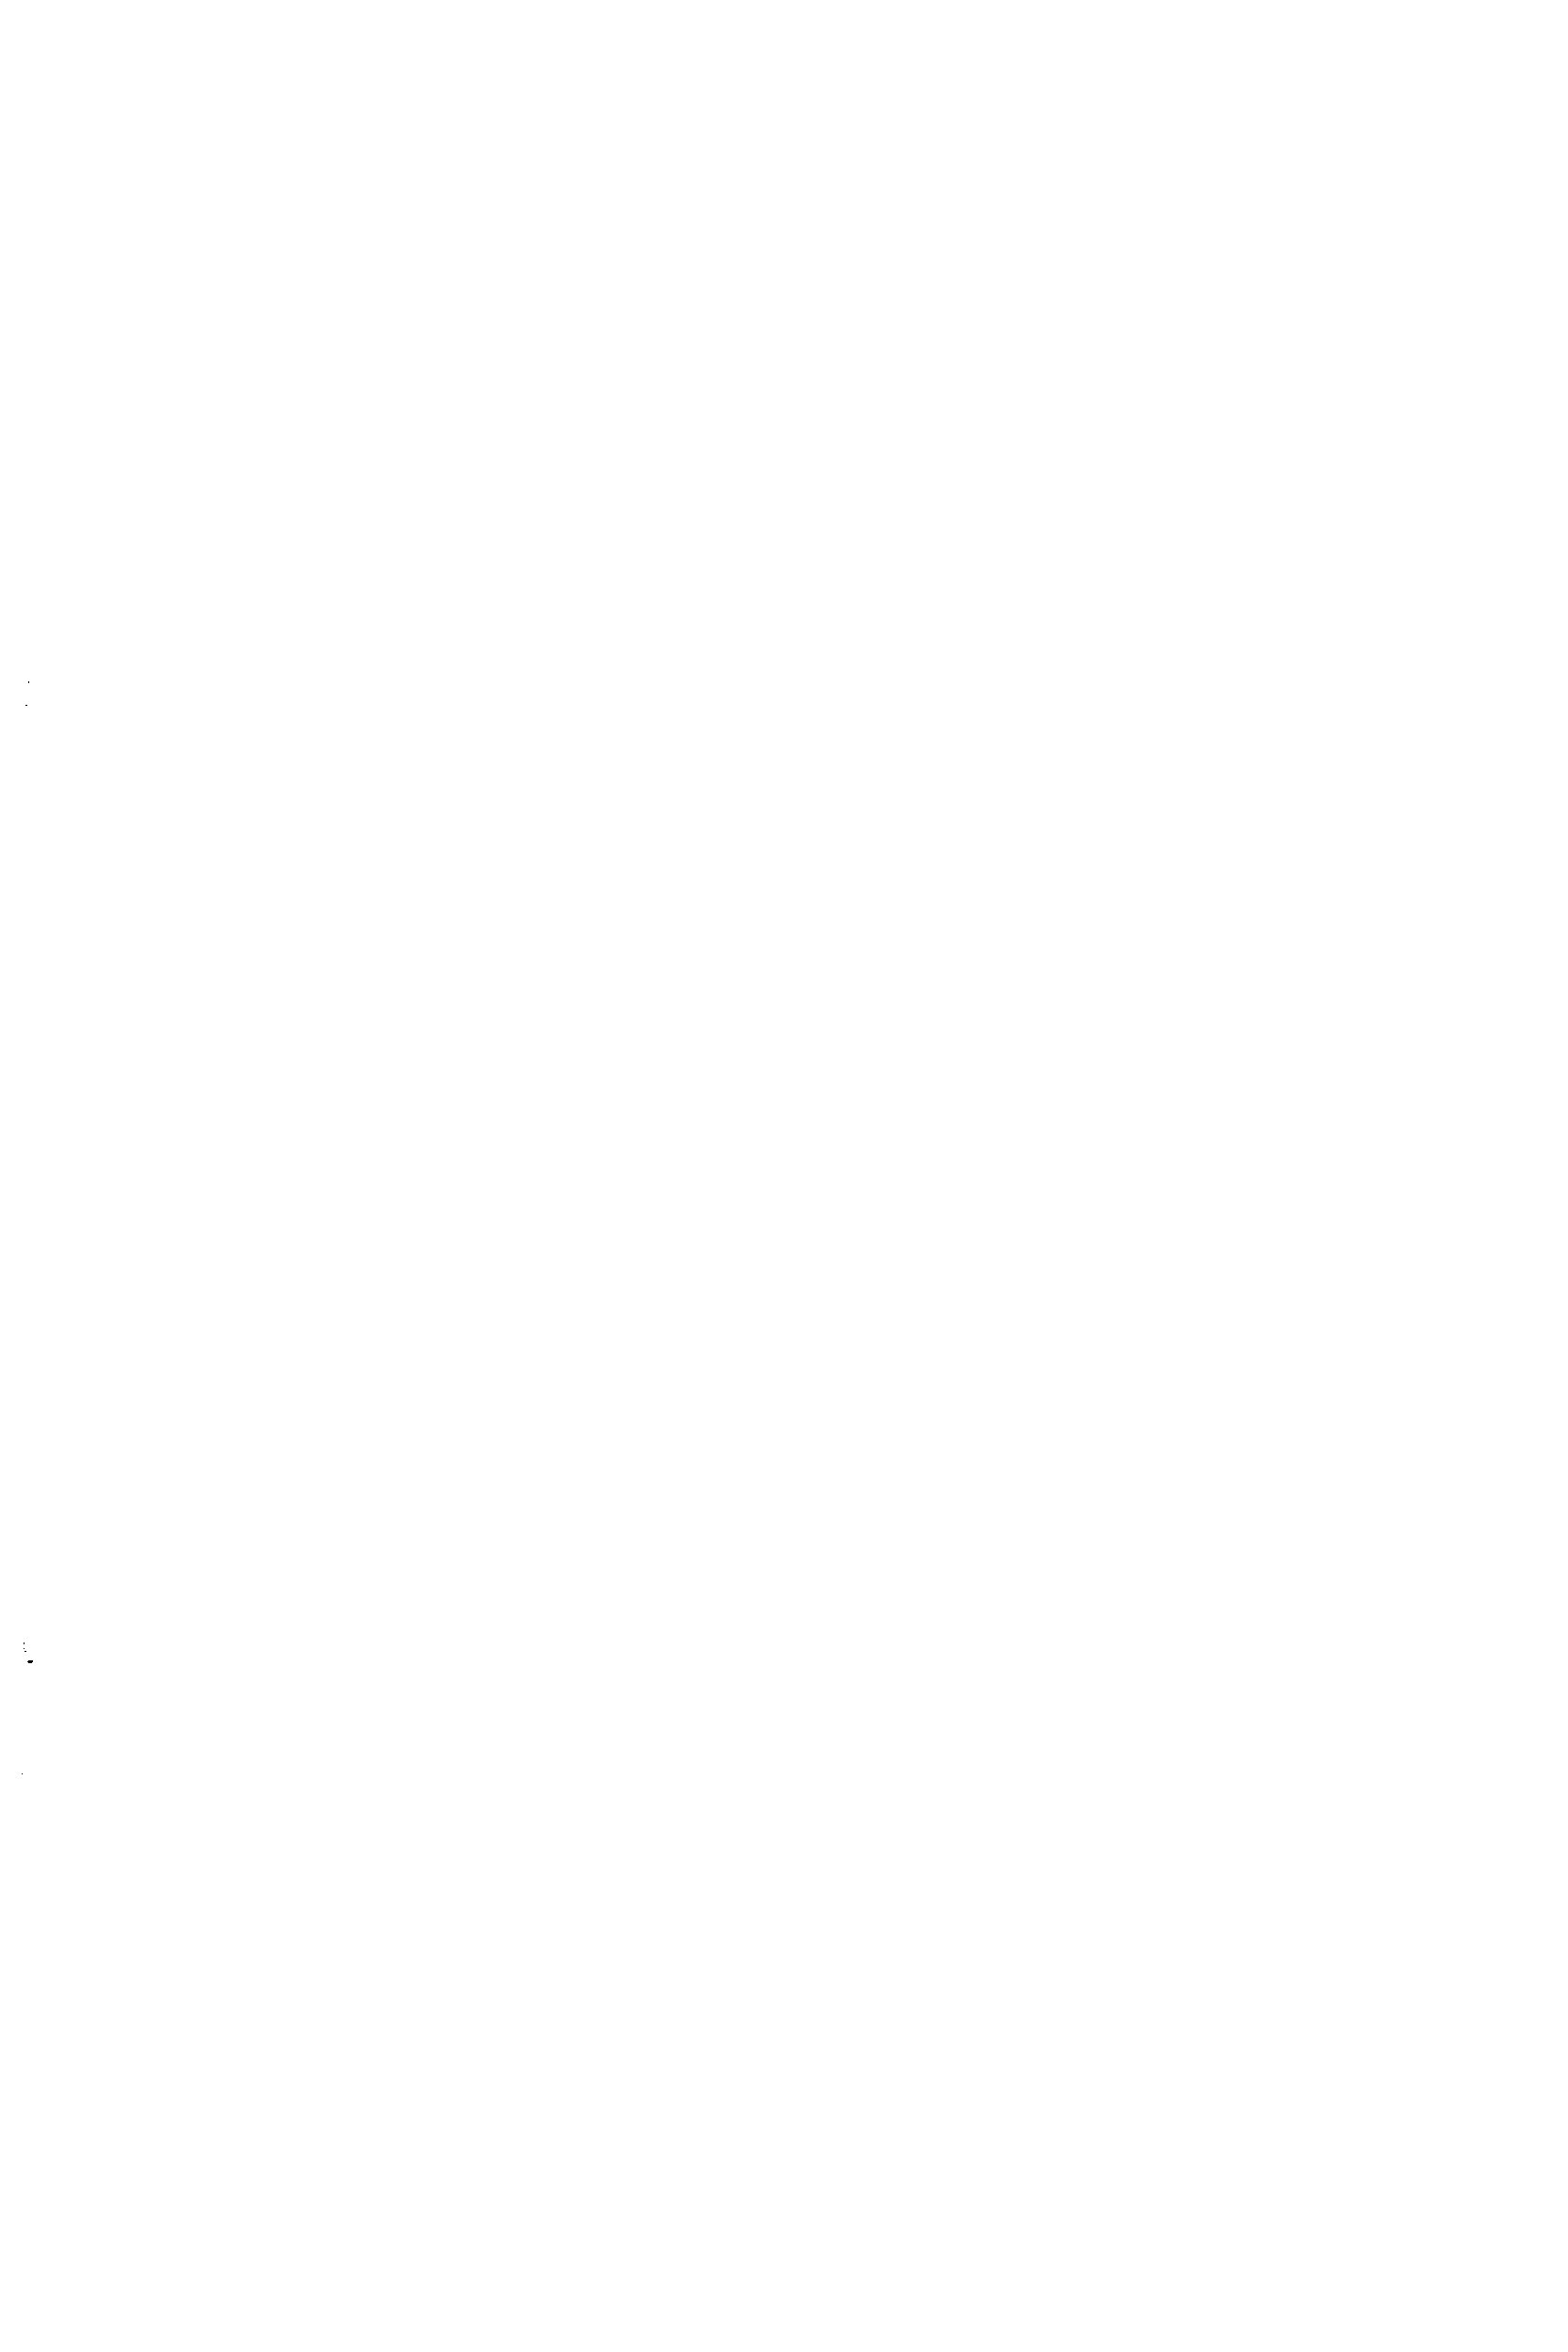 Рис. 8.2. <a href="/info/54740">Типовые конструкции</a> отъемных плоских круглых крышек в стальных сварных аппаратах а — с уплотнением по краю крышки б — зажатая между фланцами в — с уплотнением иа соединительном выступе г — с уплотнением выступ — впадина лли шип— паз д — с уплотнением овальной или восьмиугольной прокладкой
